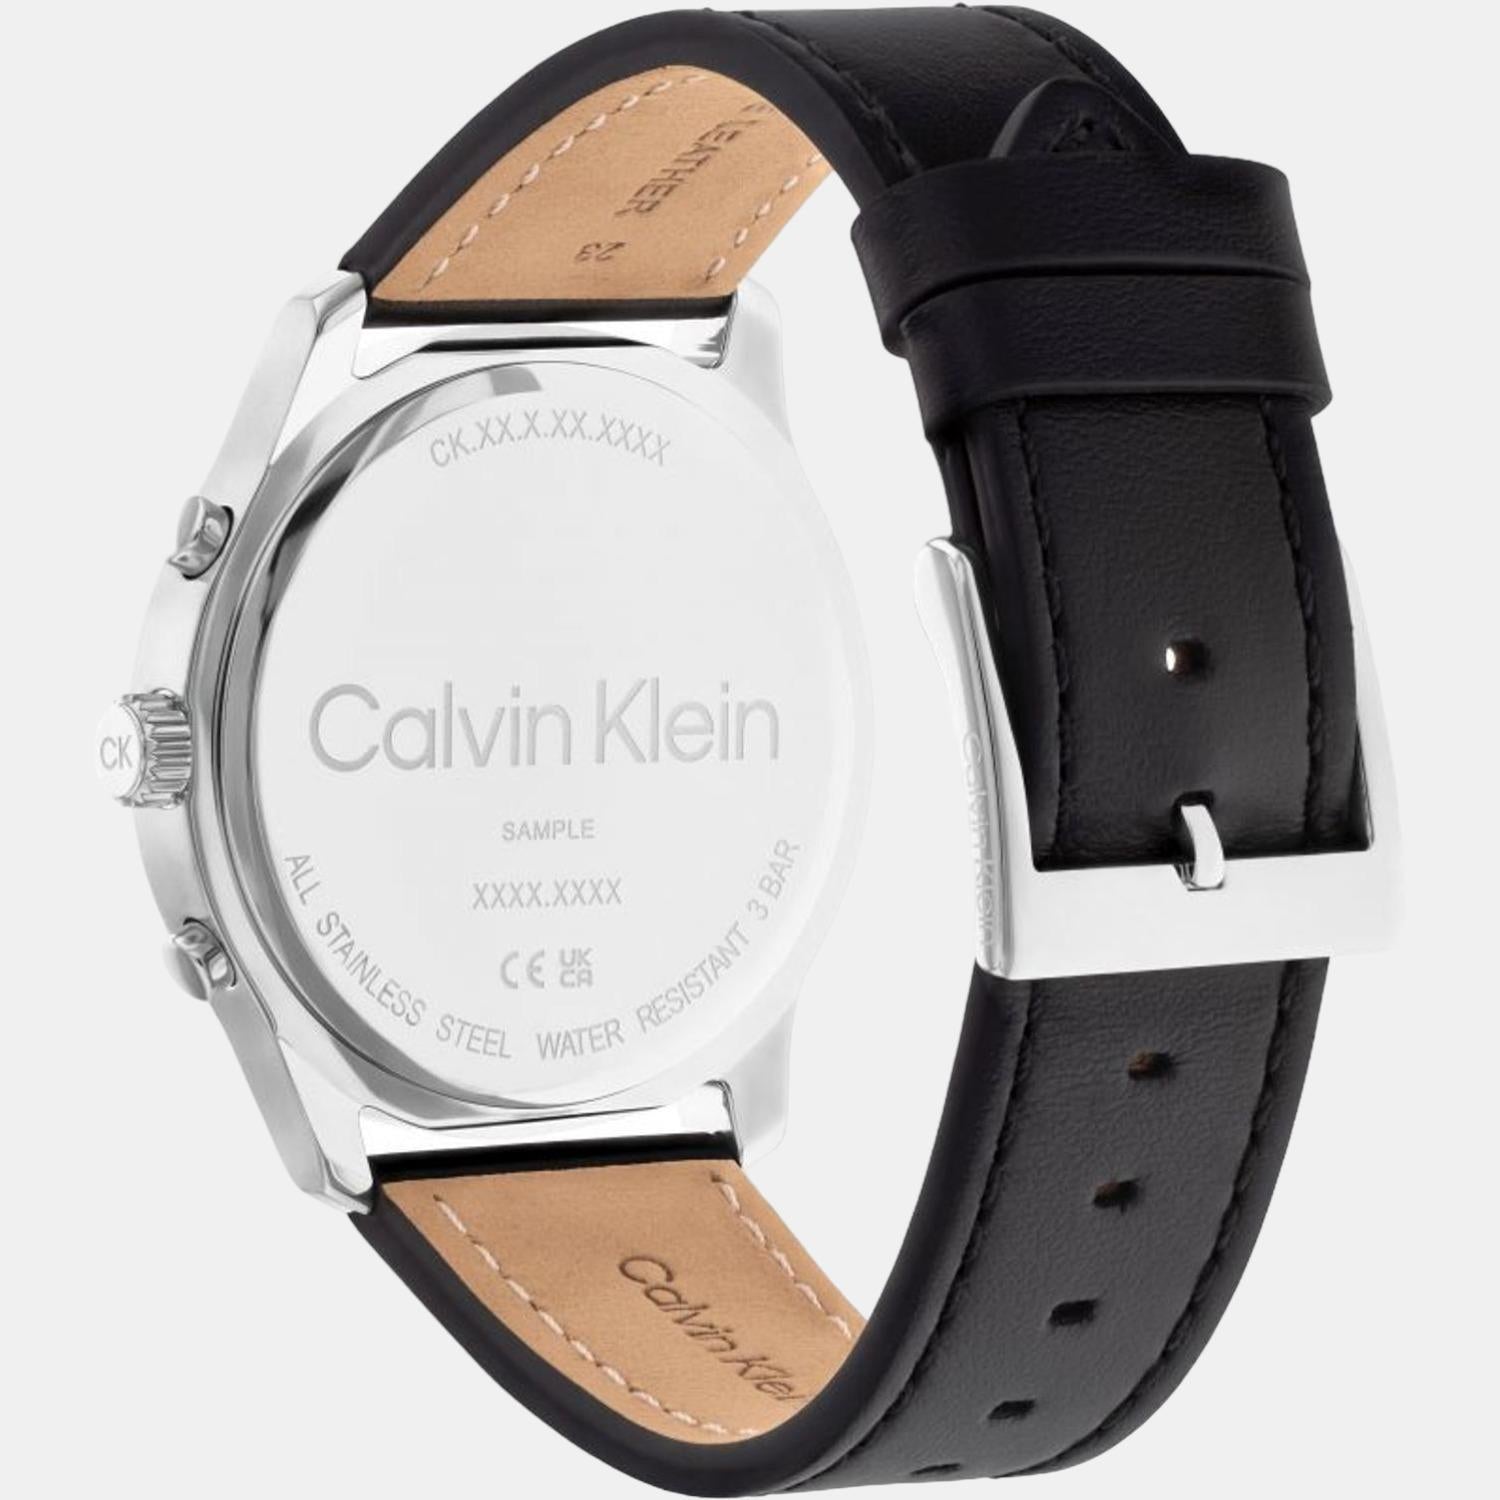 Calvin Klein Watch Philippines | The Watch Store